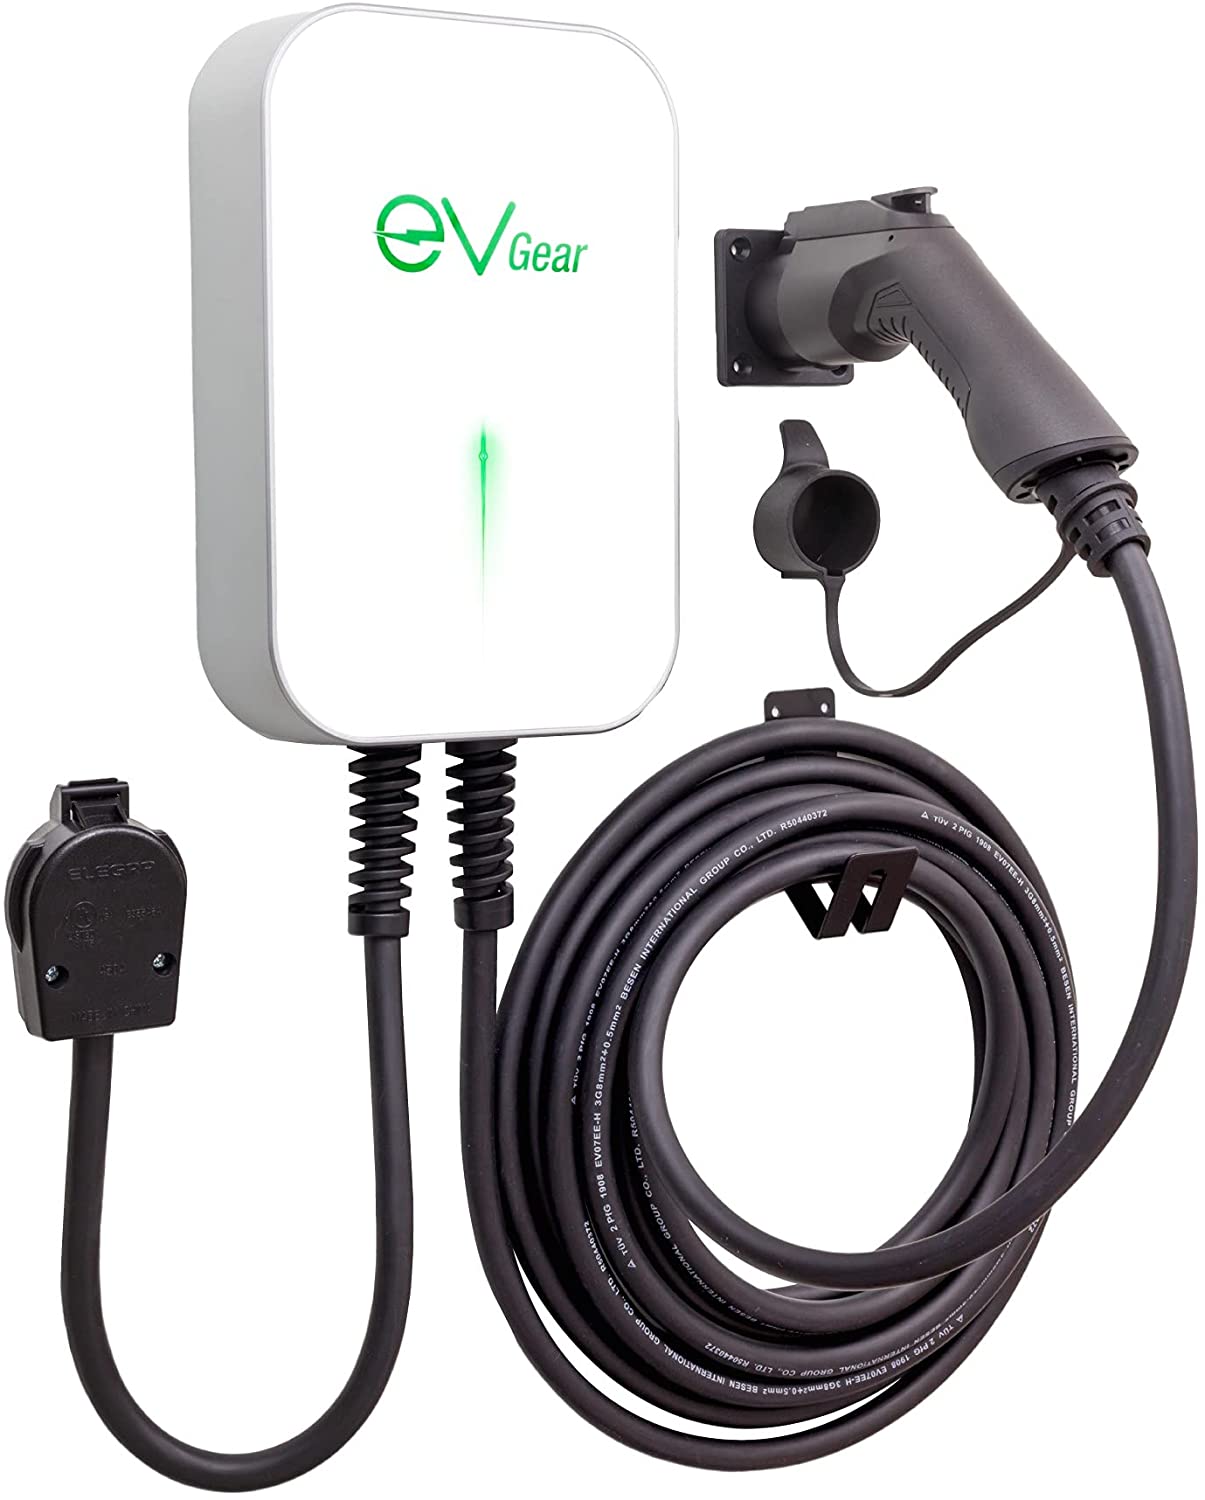 EV Gear Level 2 Cargador de vehiculo electrico 40AMP 240v, 25Ft de Cable, NEMA 14-50 Wall Plug